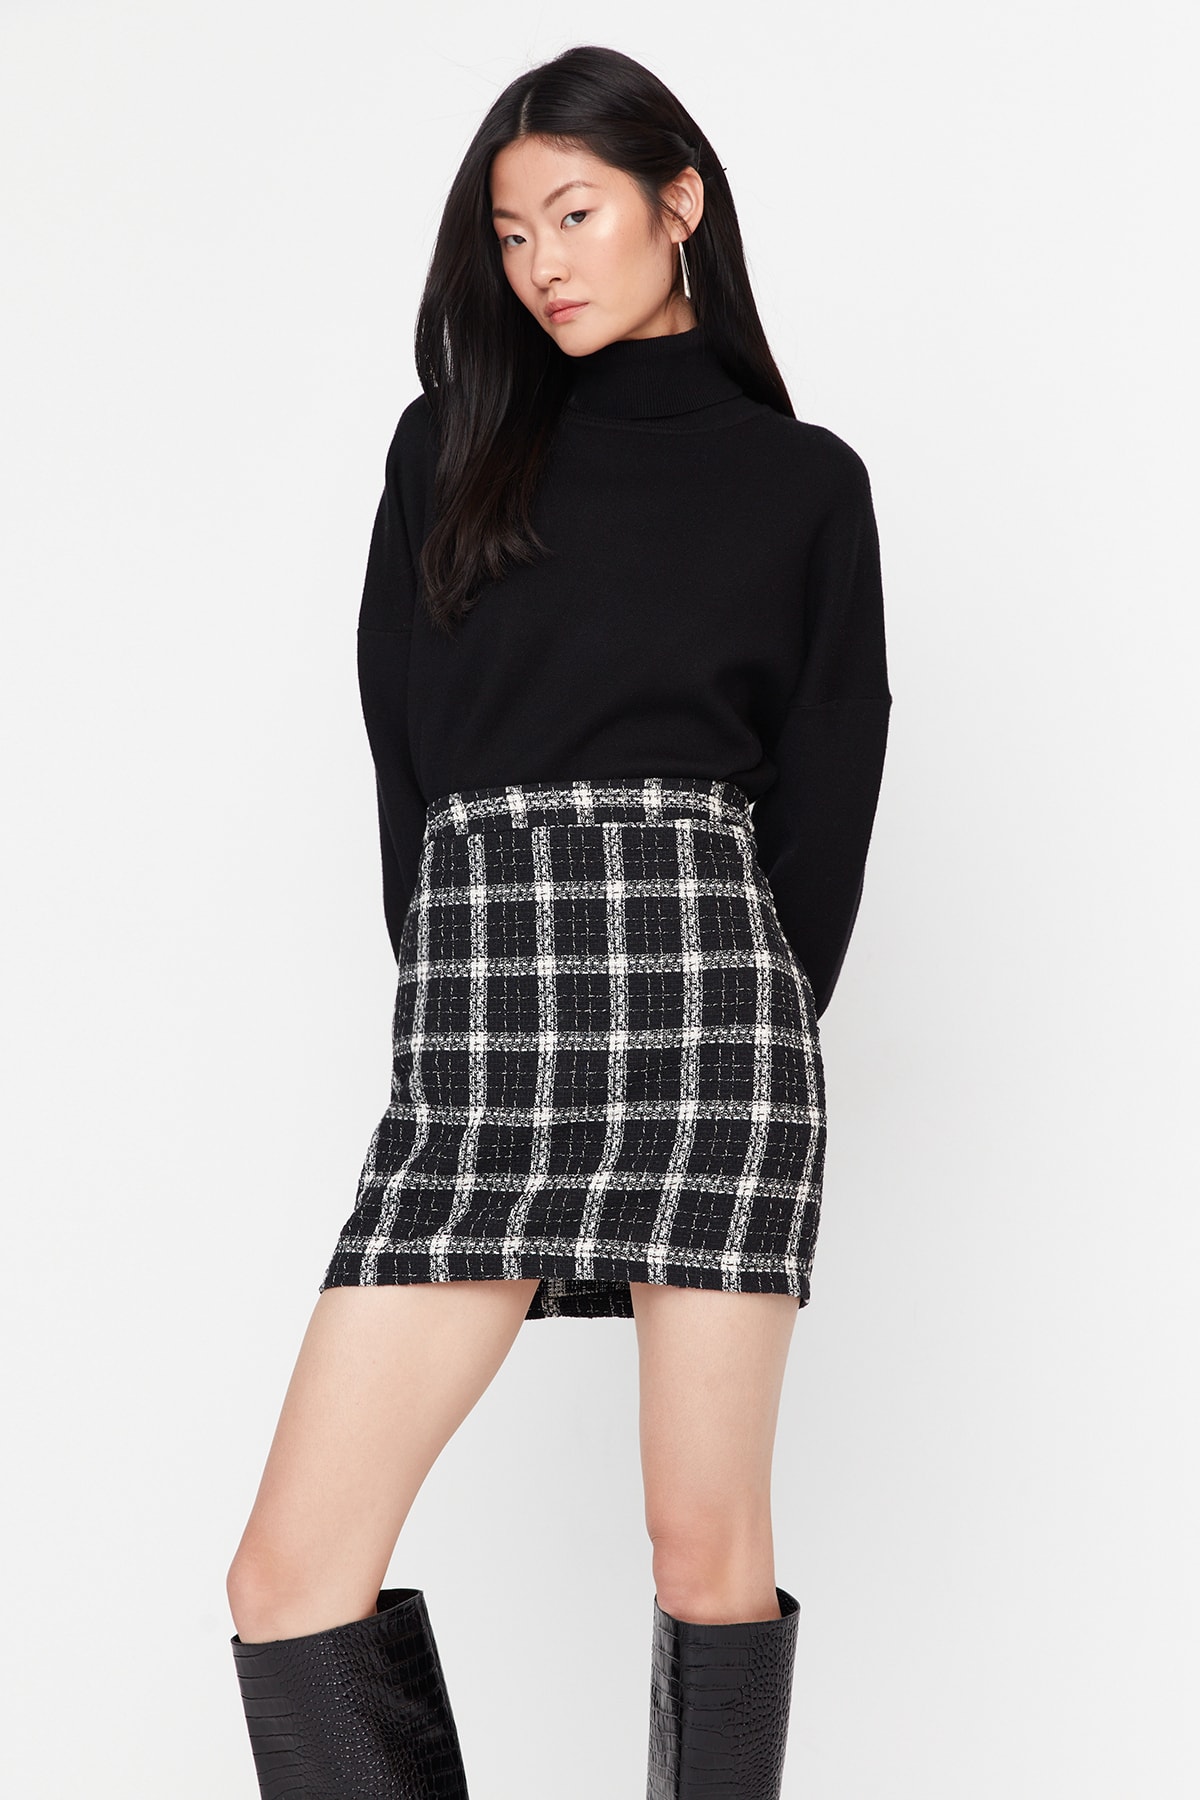 Trendyol Black Checkered Patterned Mini Woven Skirt